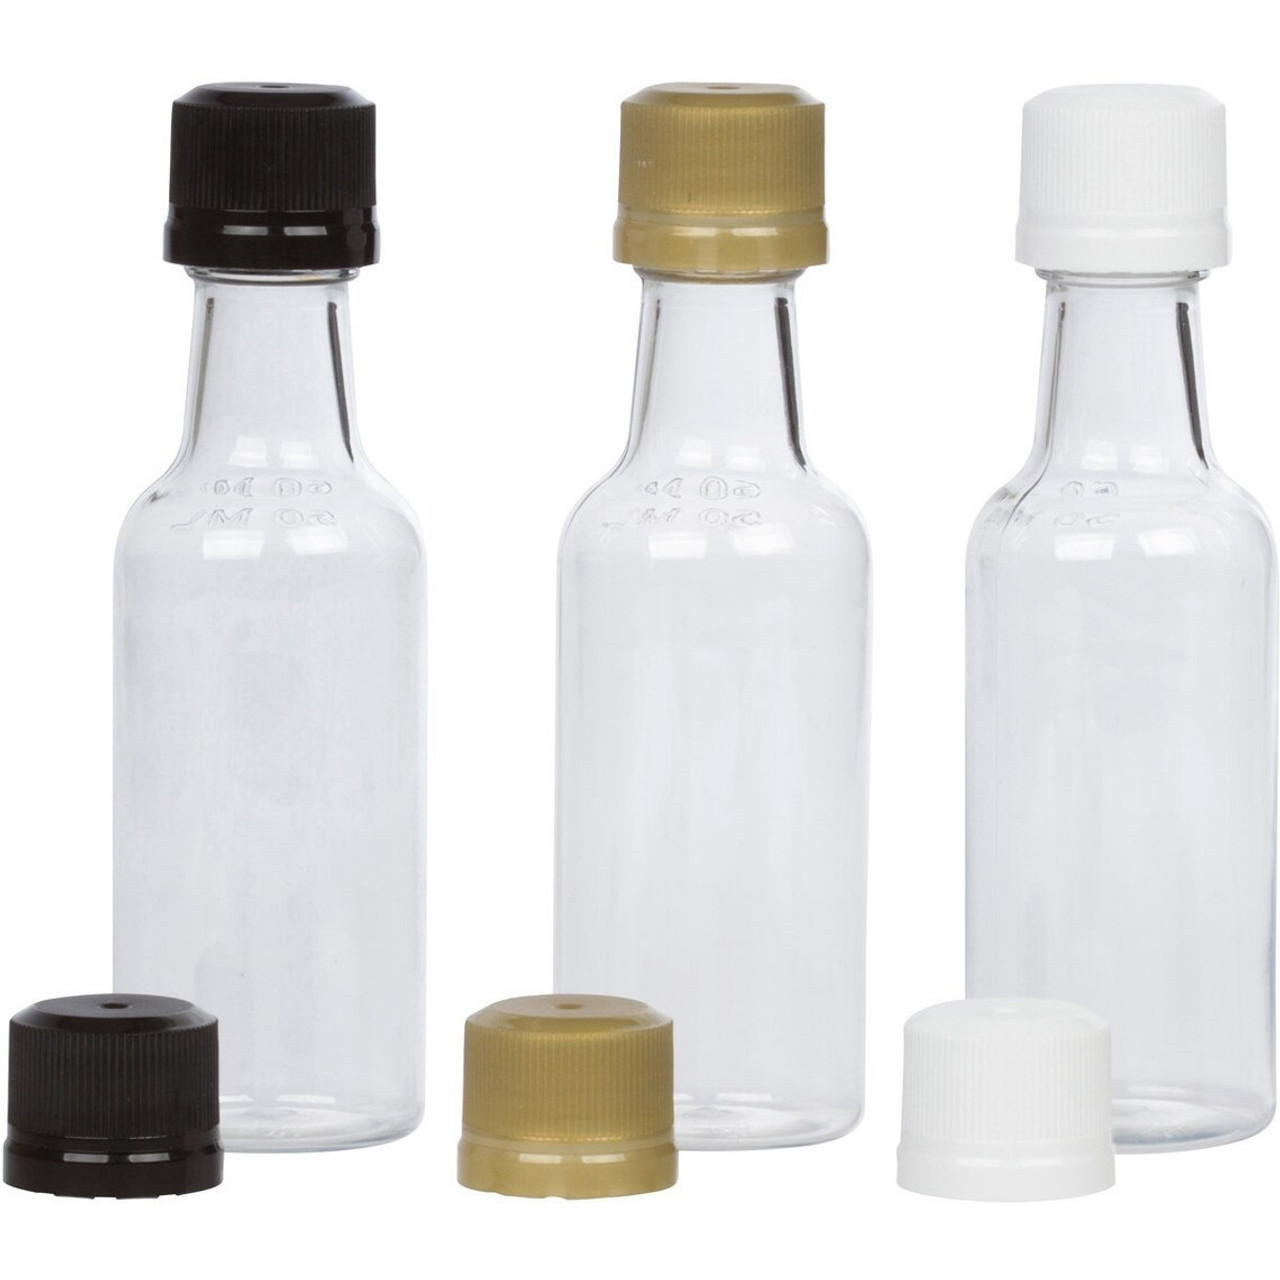 120 Stück 50ml Mini-Plastiks chnaps flaschen Set, Spiritus